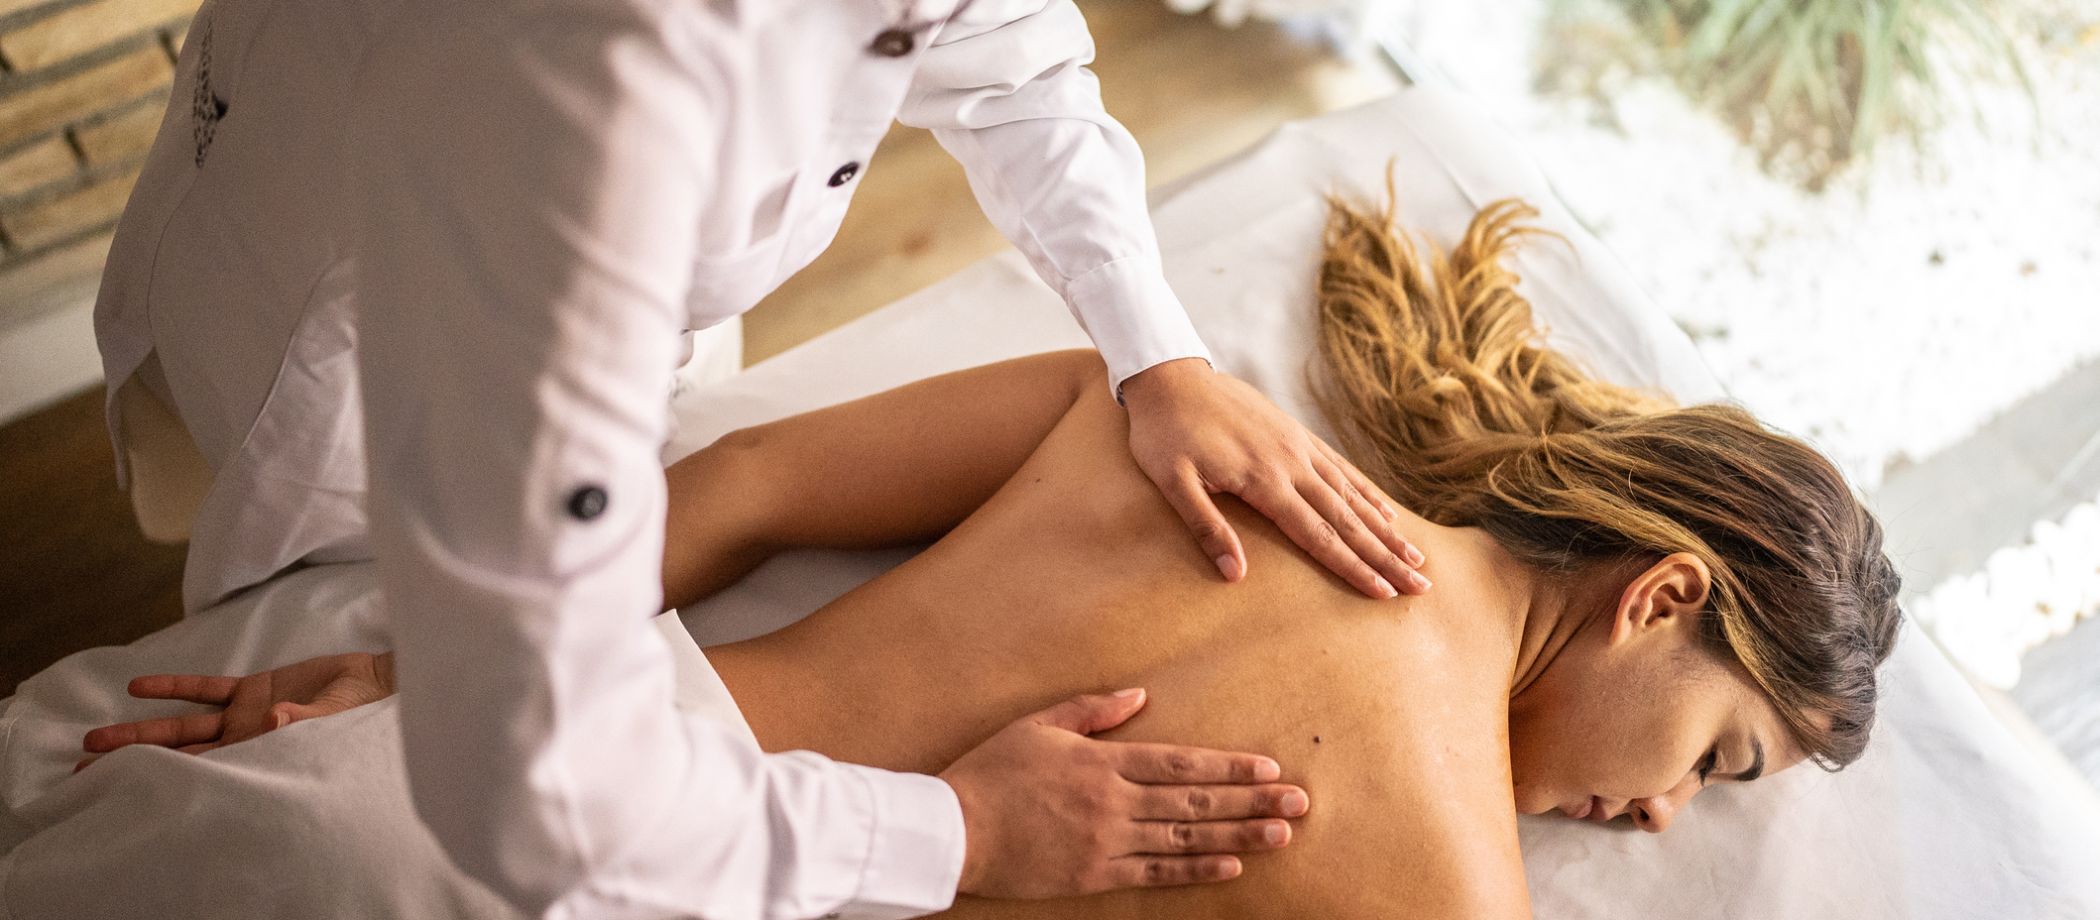 Luxury Back, Neck & Shoulder Massage Including Back Scrub